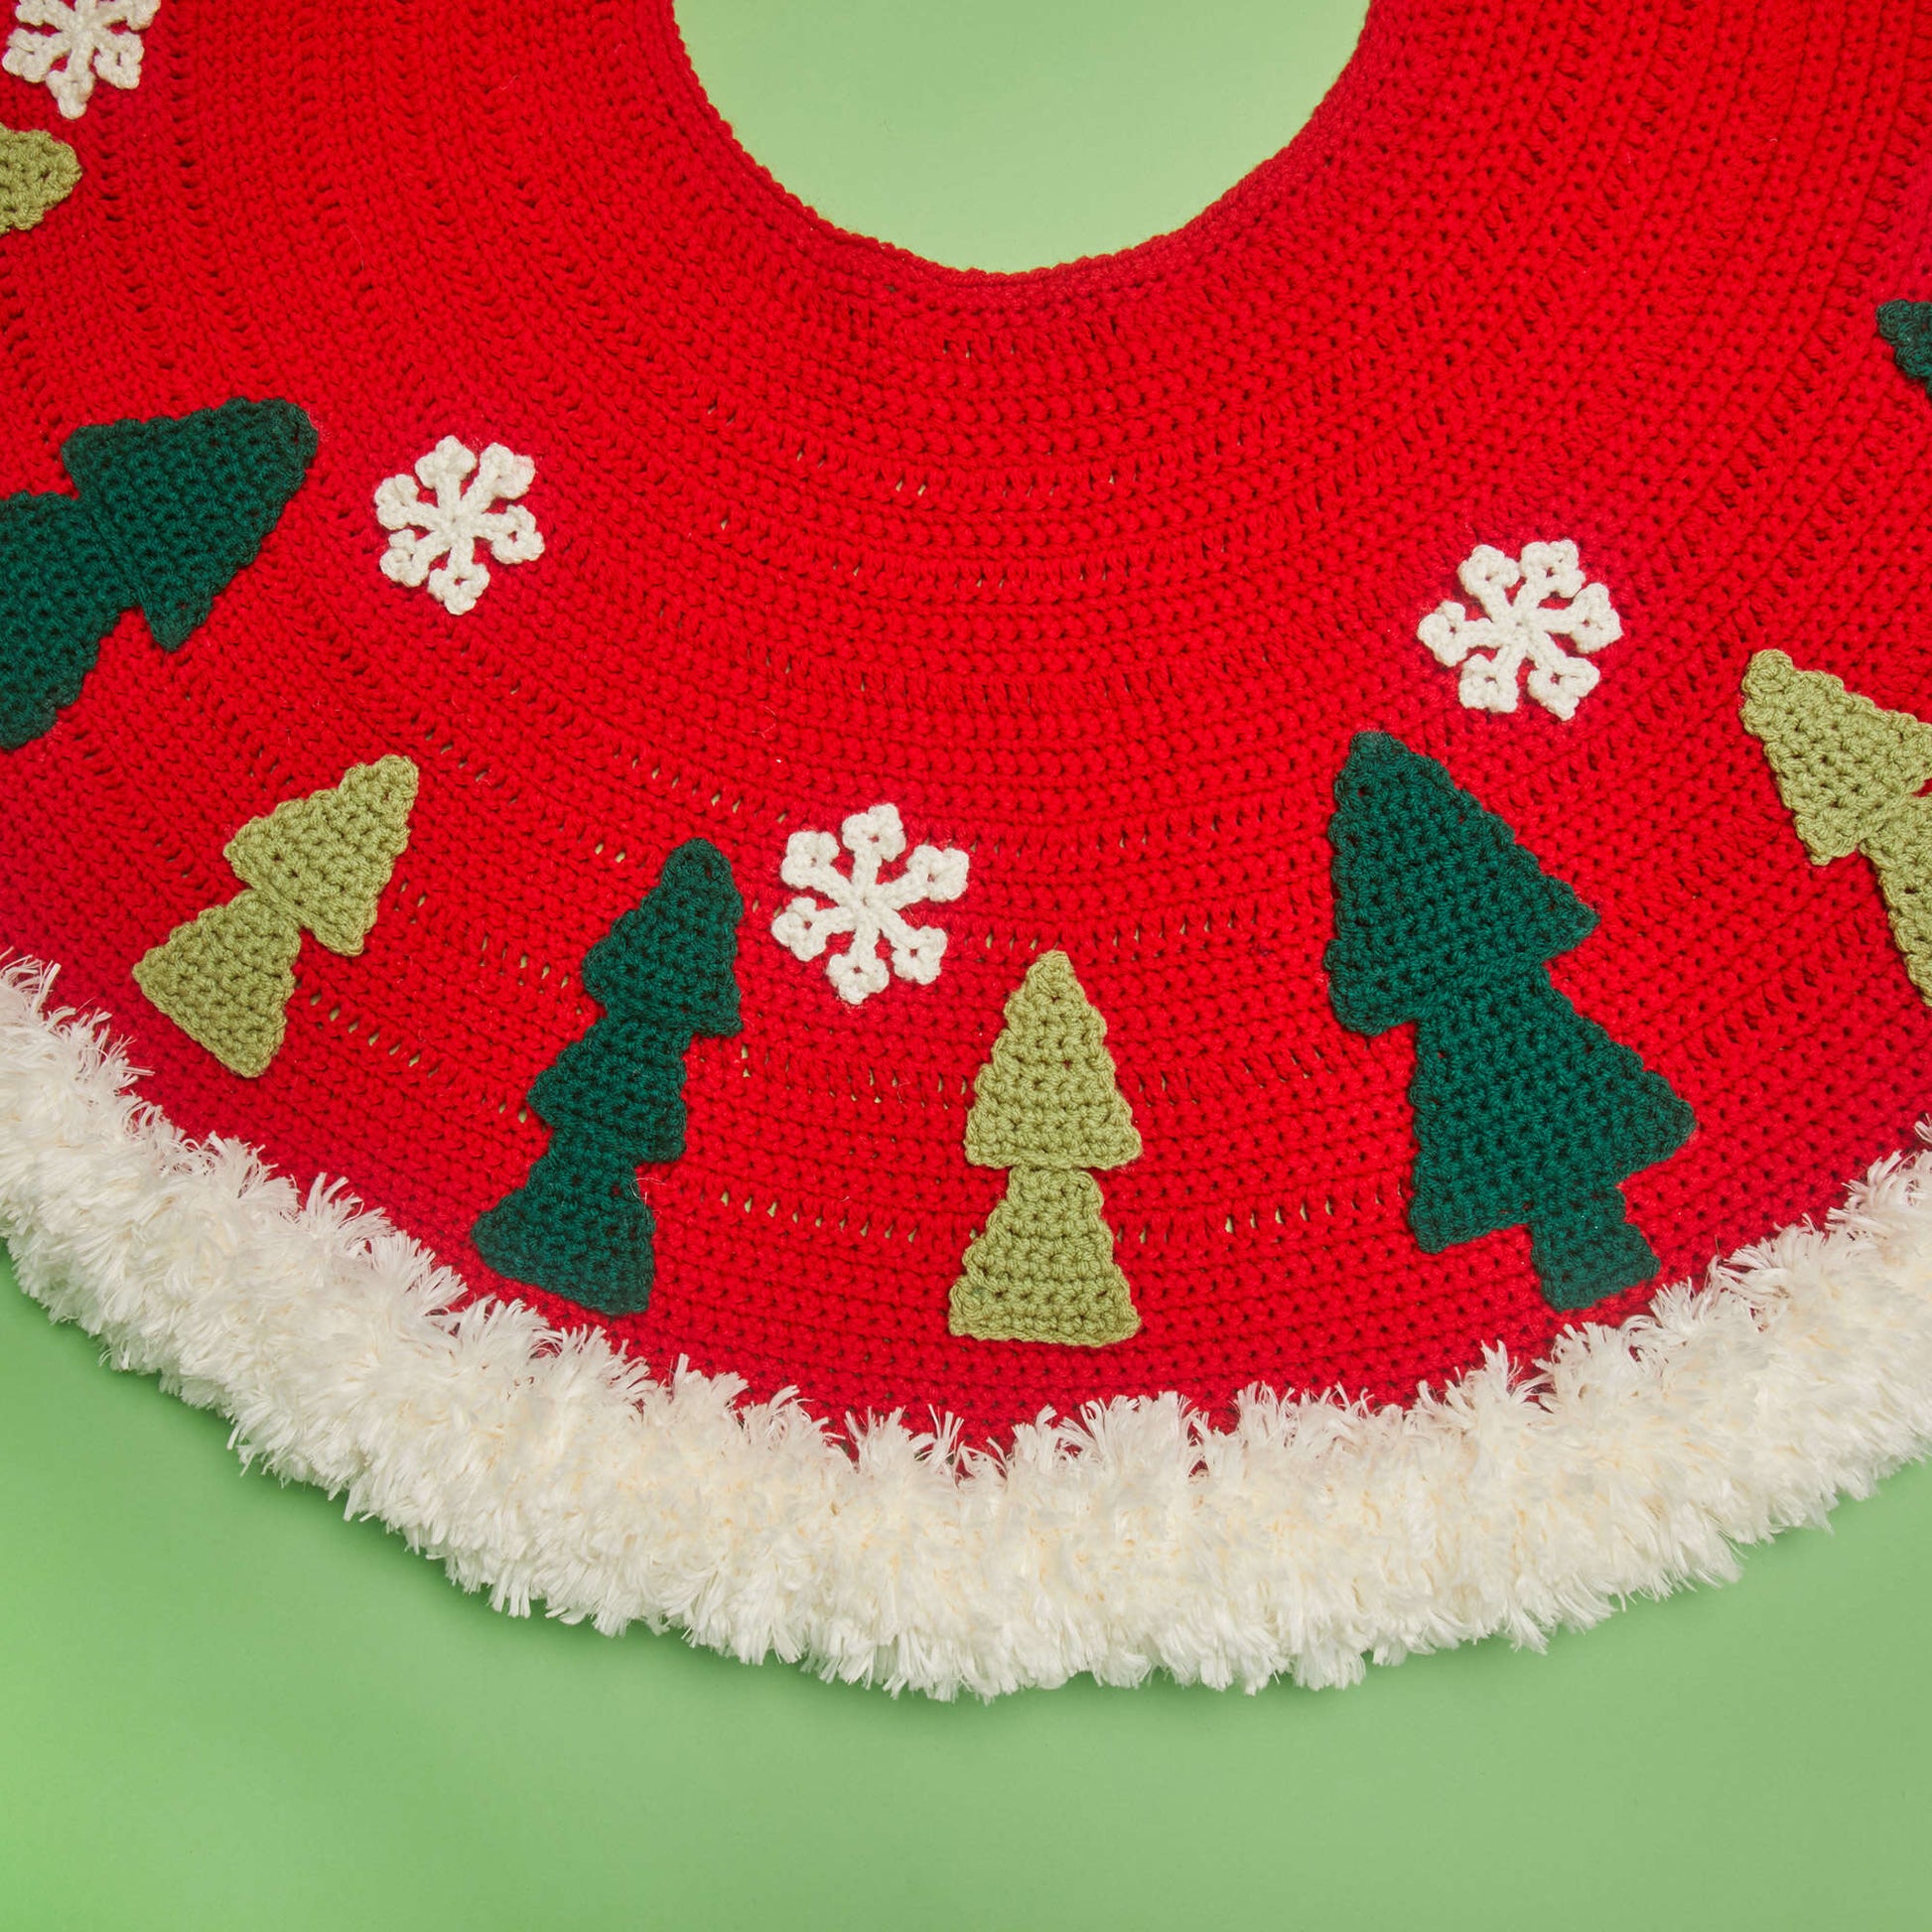 Free Red Heart Joyous Tree Skirt Crochet Pattern